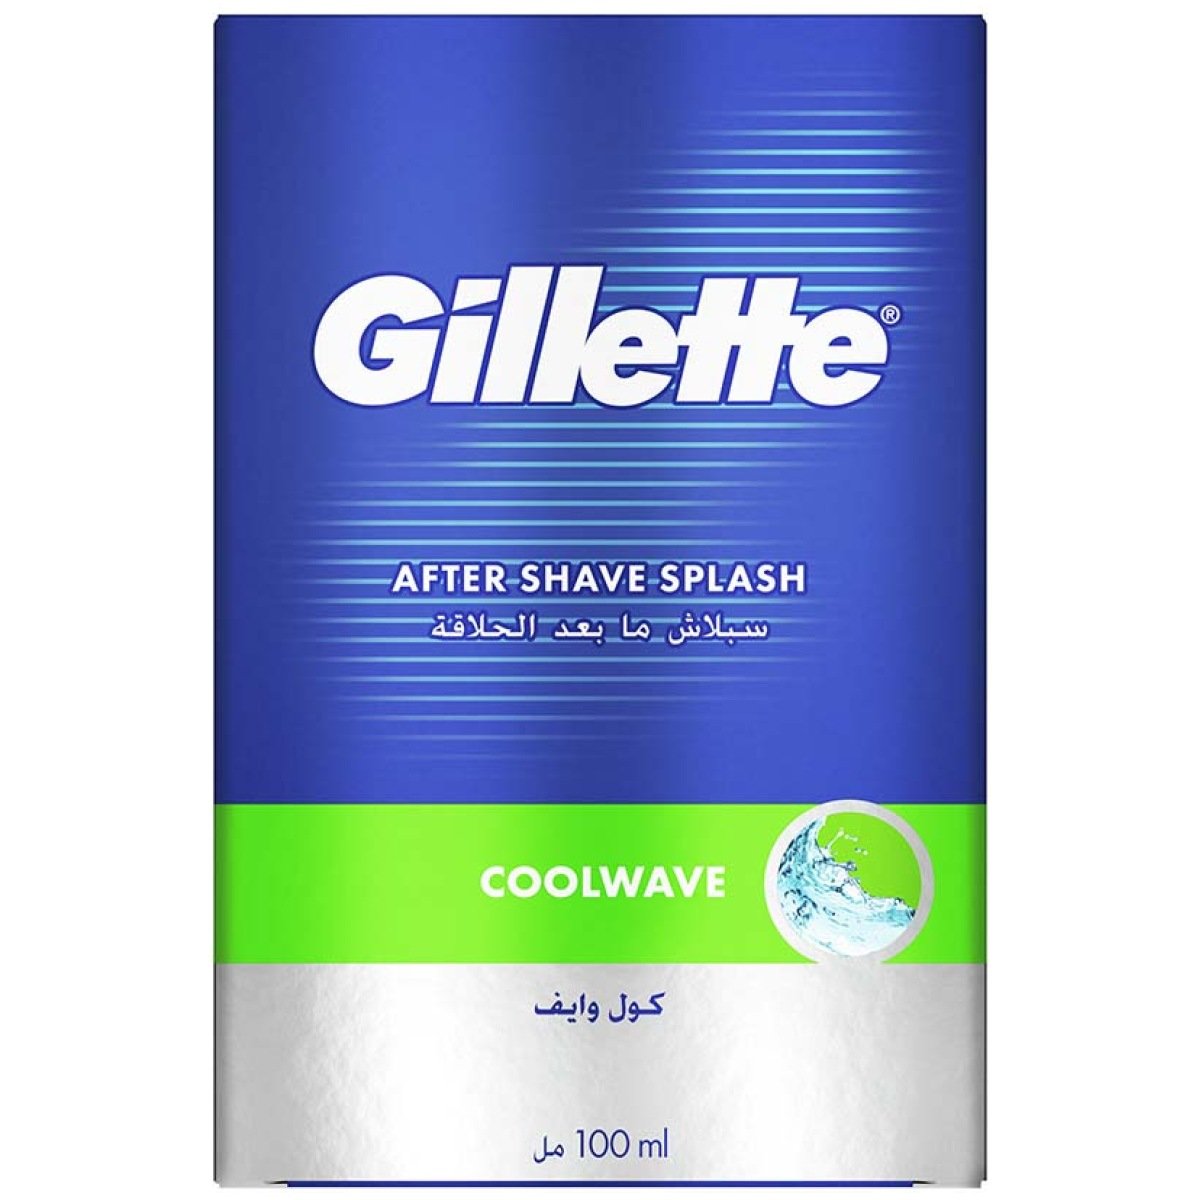 Gillette Coolwave After Shave Splash 100ml